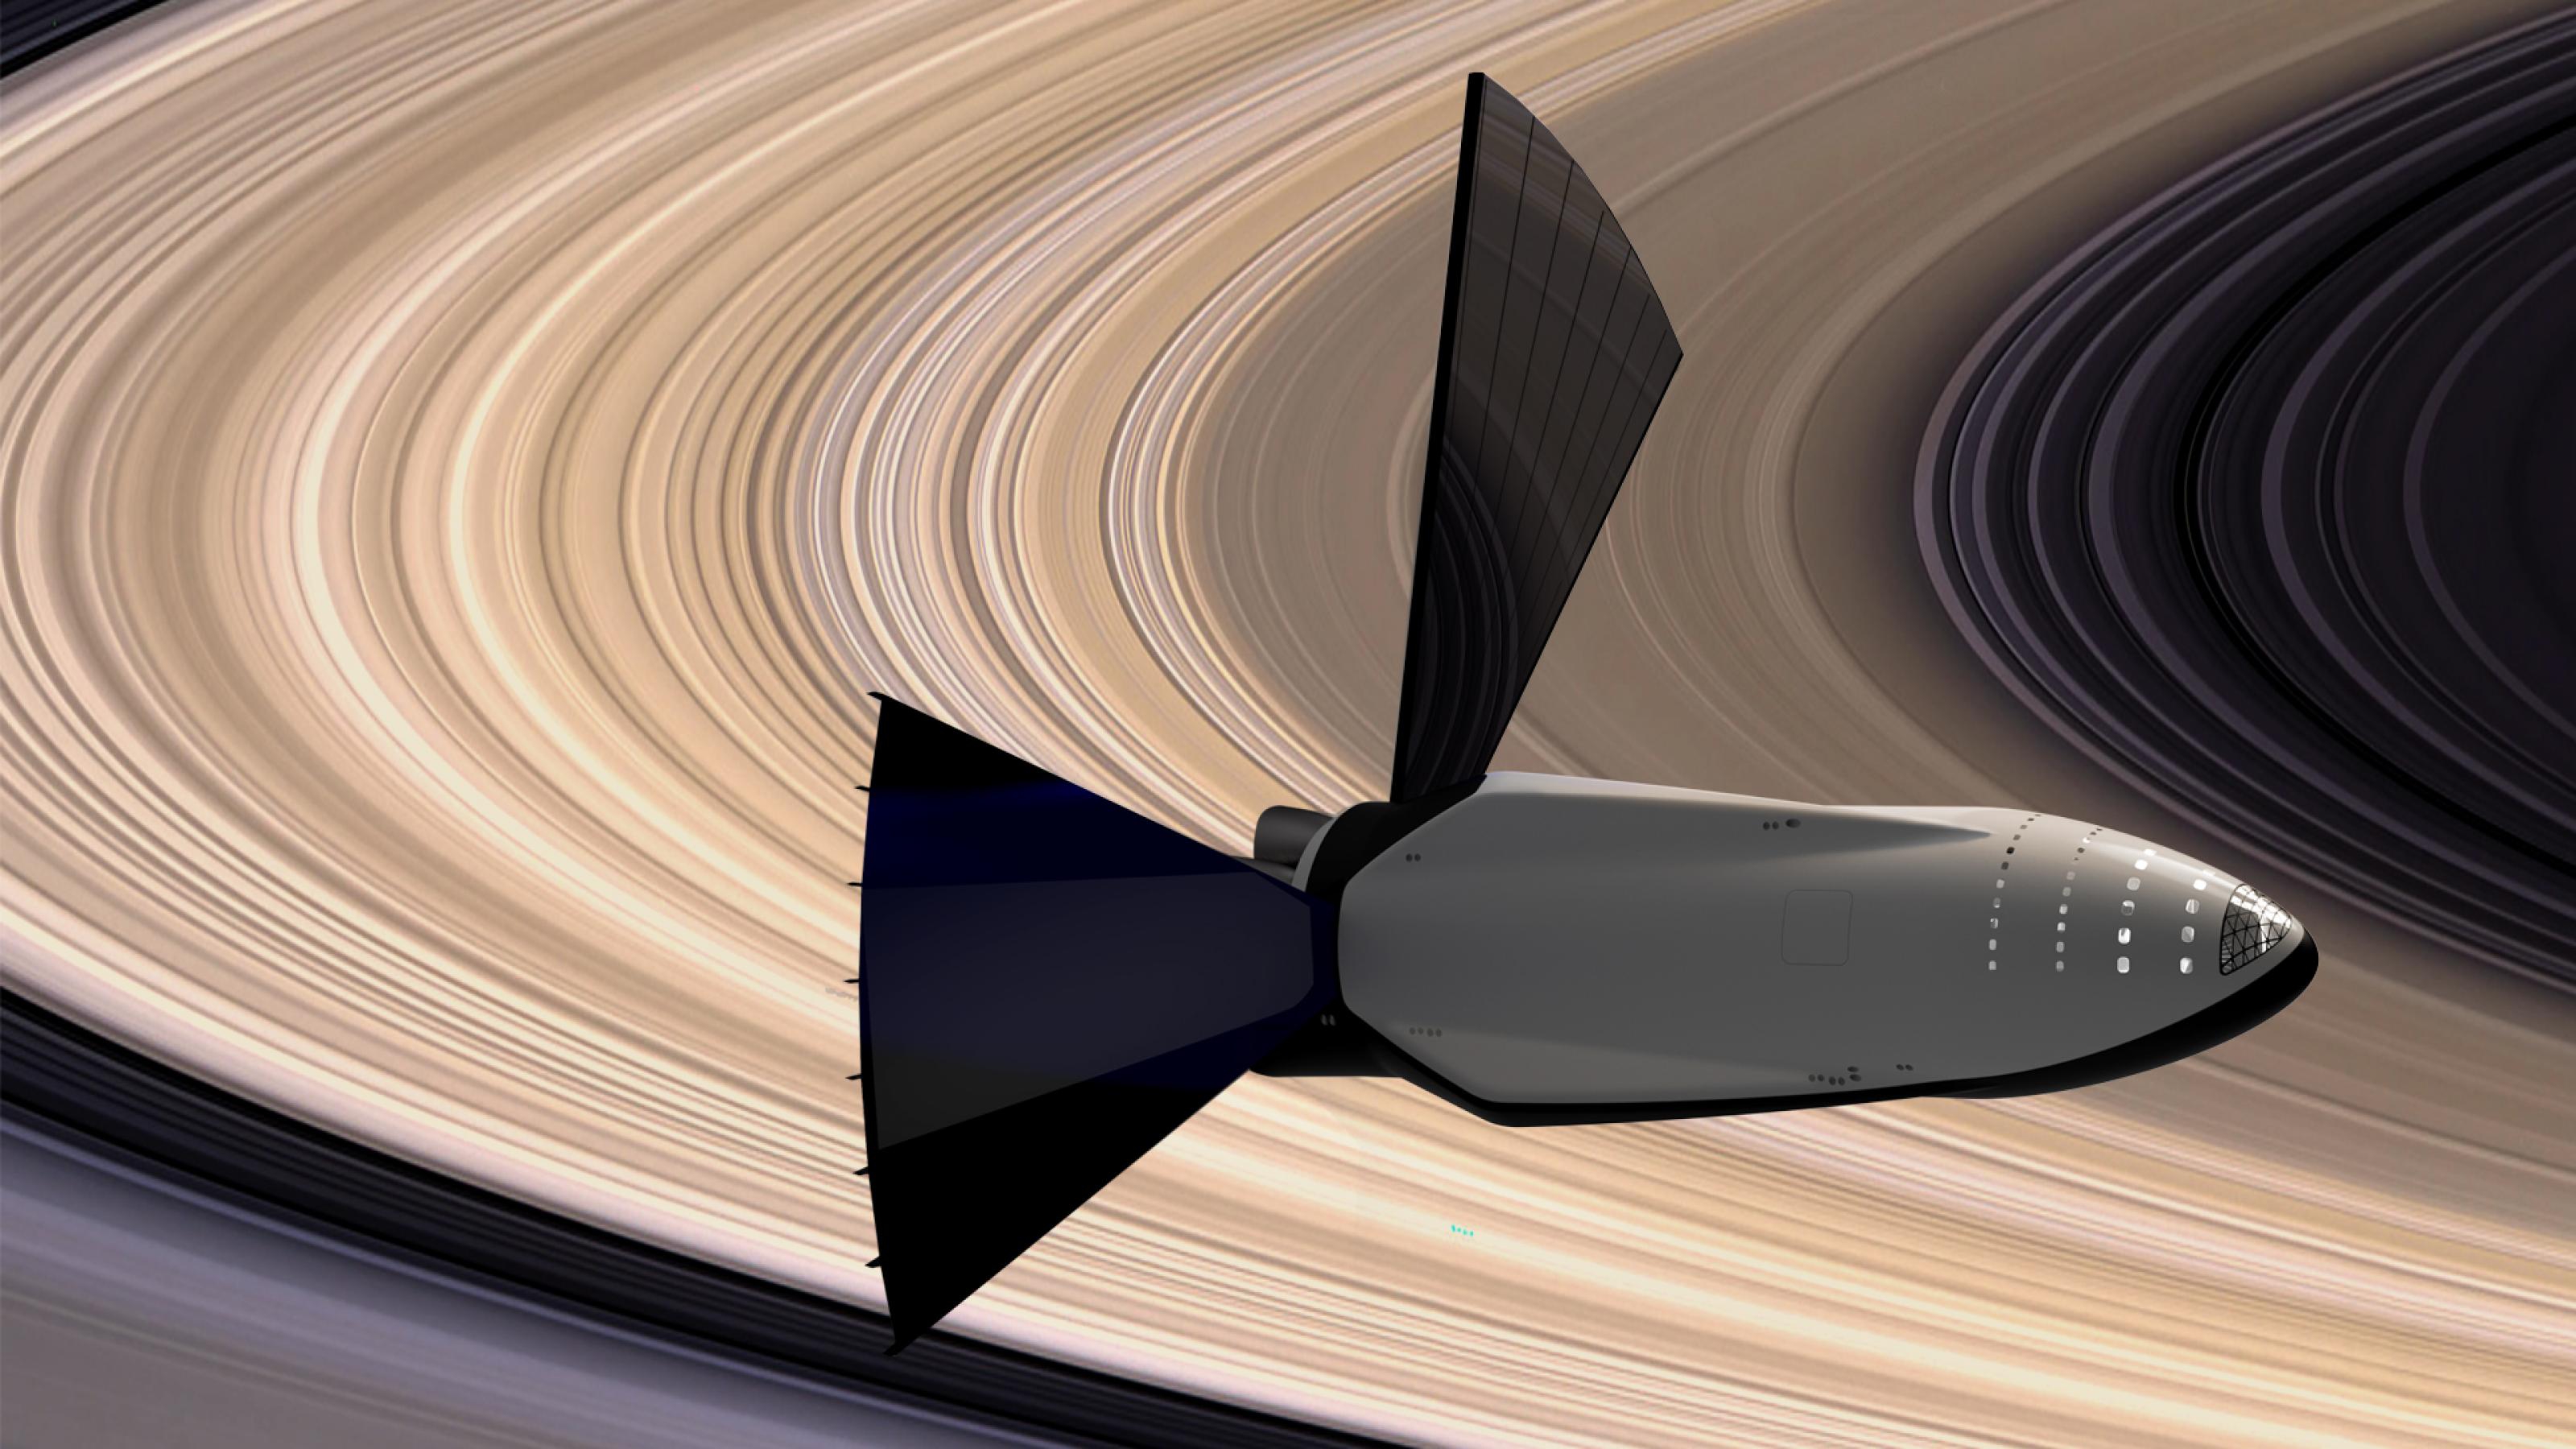 Das Starship von SpaceX mit ausgefahrenen, fächerförmigen Solarzellen am Heck kreist vor dem Saturn.